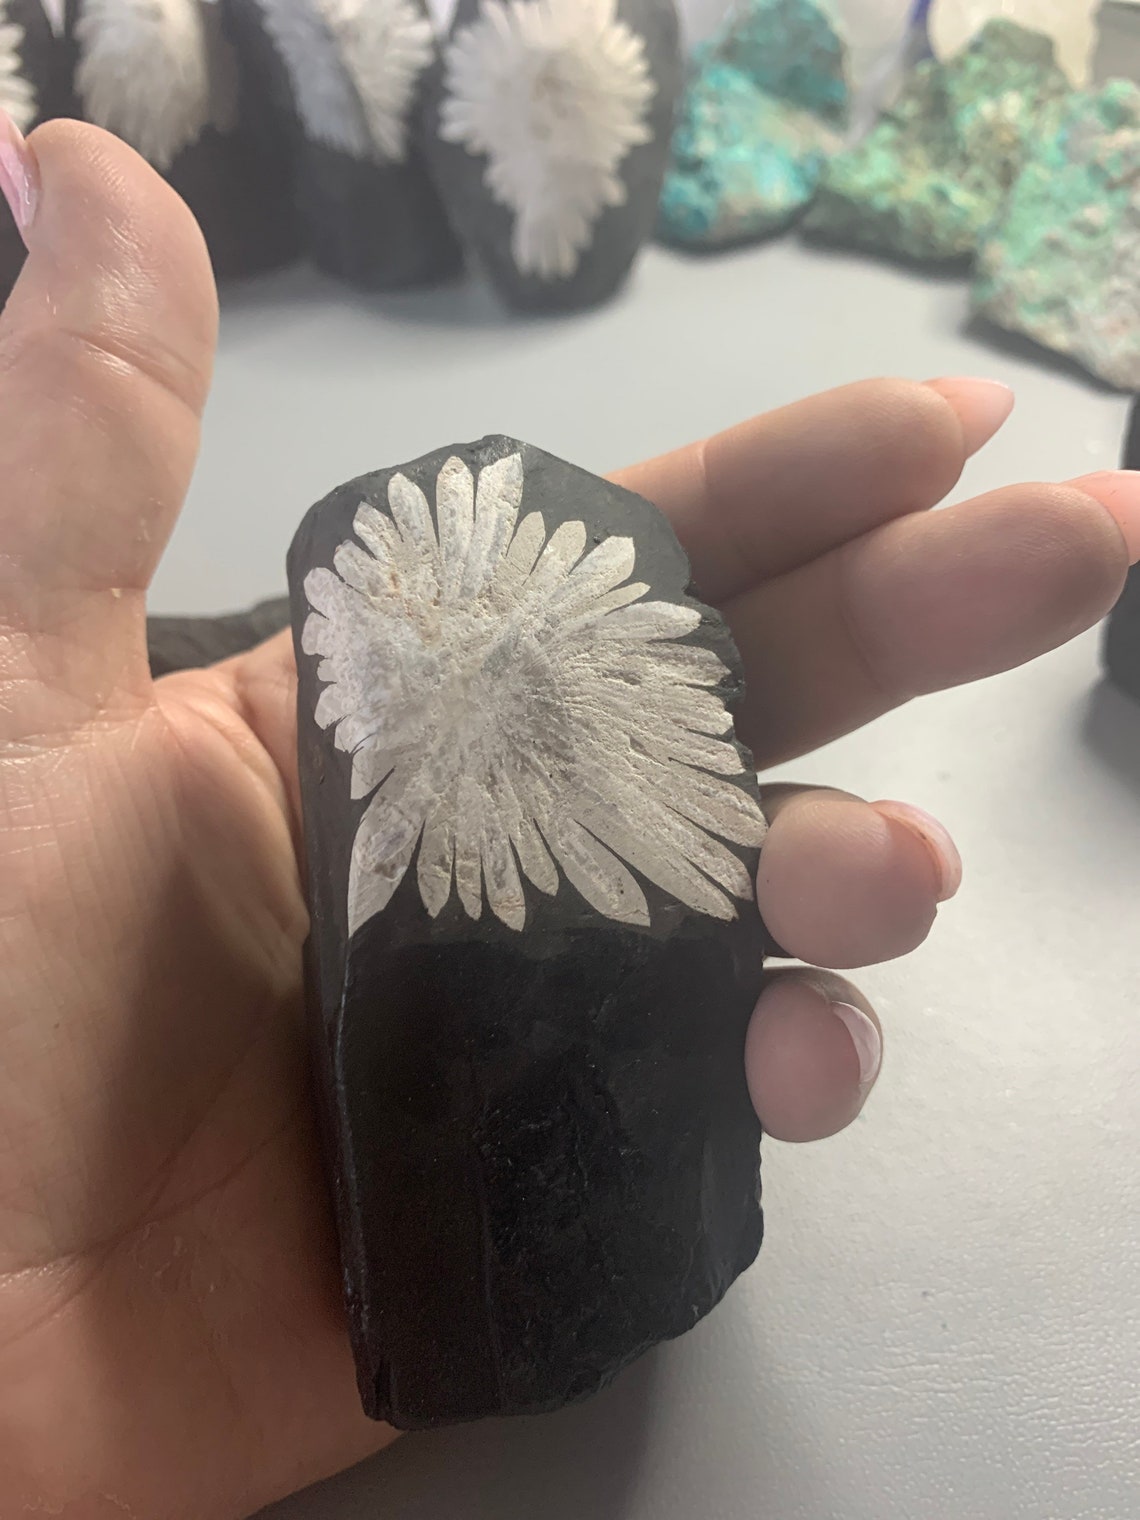 Chrysanthemum stone flower stone | Etsy